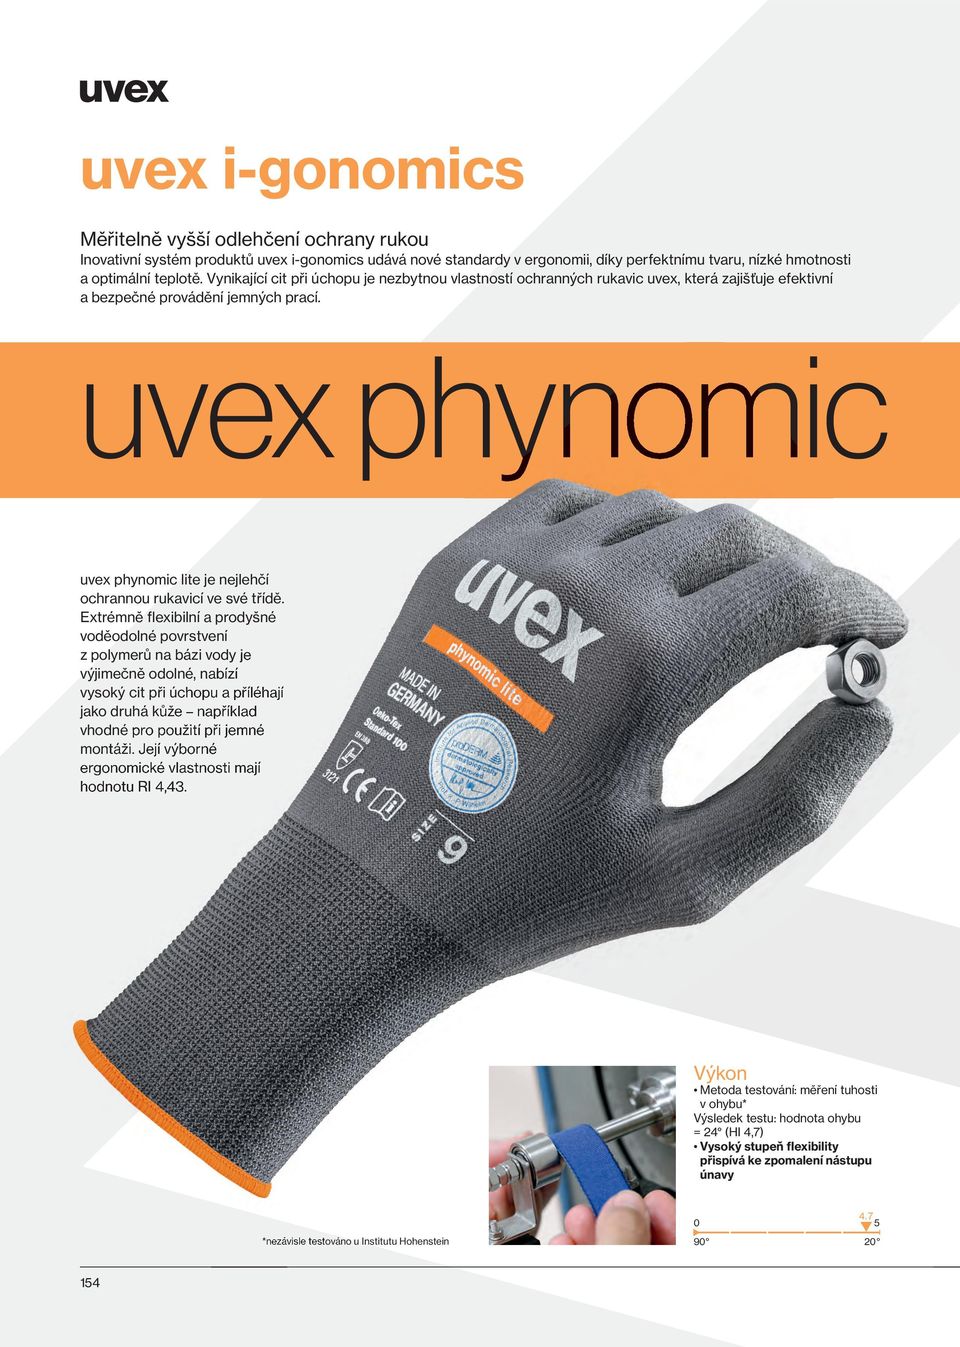 uvex phynomic uvex phynomic lite je nejlehčí ochrannou rukavicí ve své třídě.